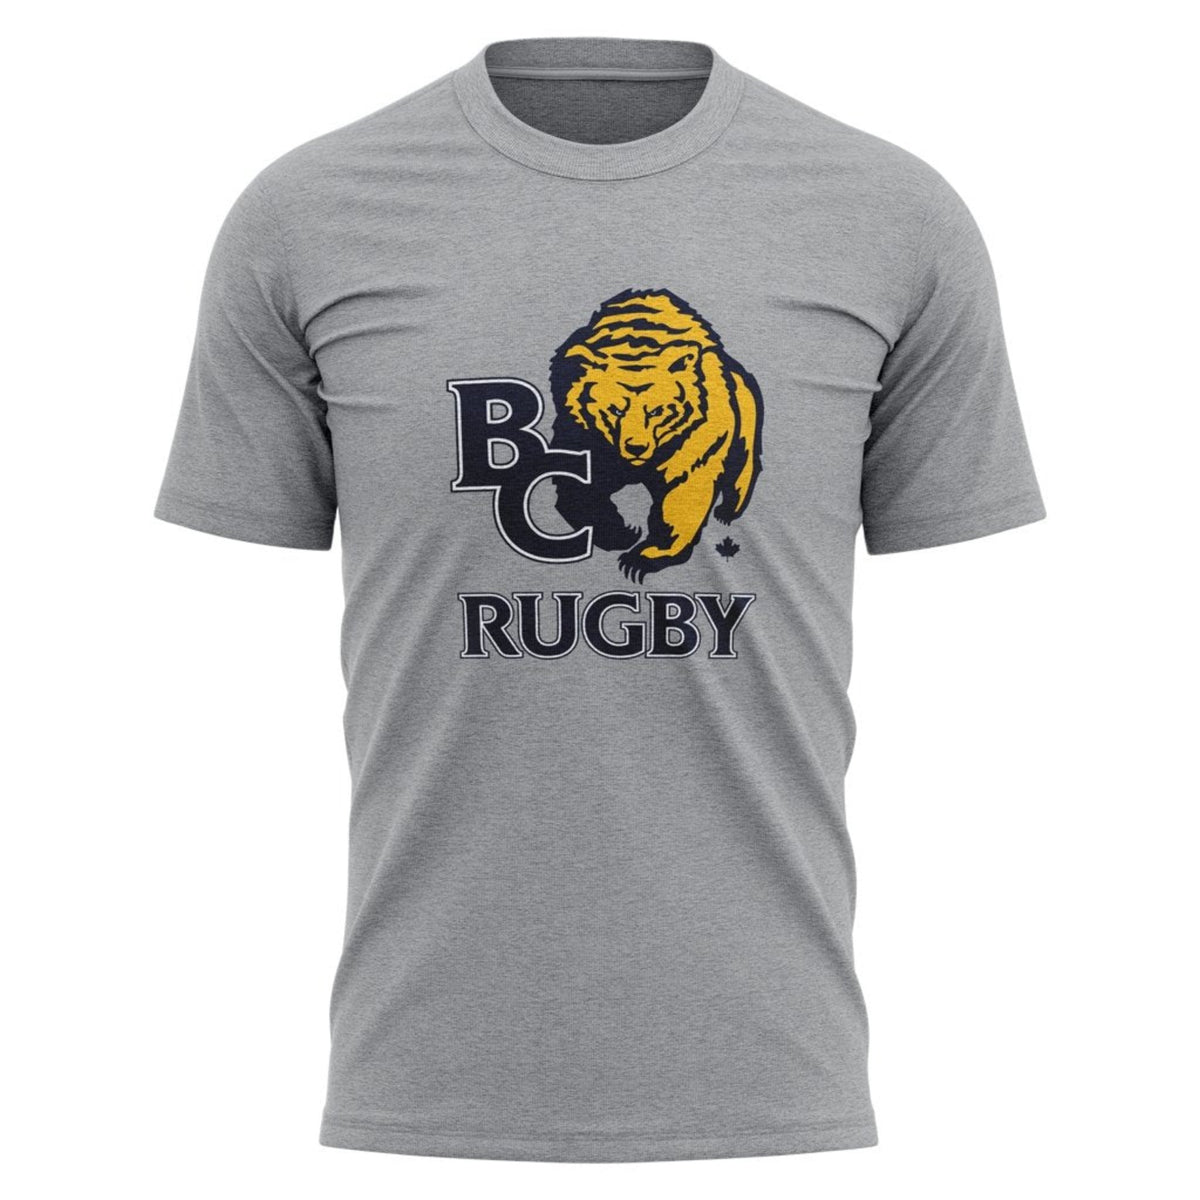 BC Rugby 2021 &quot;Team&quot; Tee - Men&#39;s Navy/Grey/White/Gold - www.therugbyshop.com www.therugbyshop.com MEN&#39;S / GREY / S XIX Brands TEES BC Rugby 2021 &quot;Team&quot; Tee - Men&#39;s Navy/Grey/White/Gold